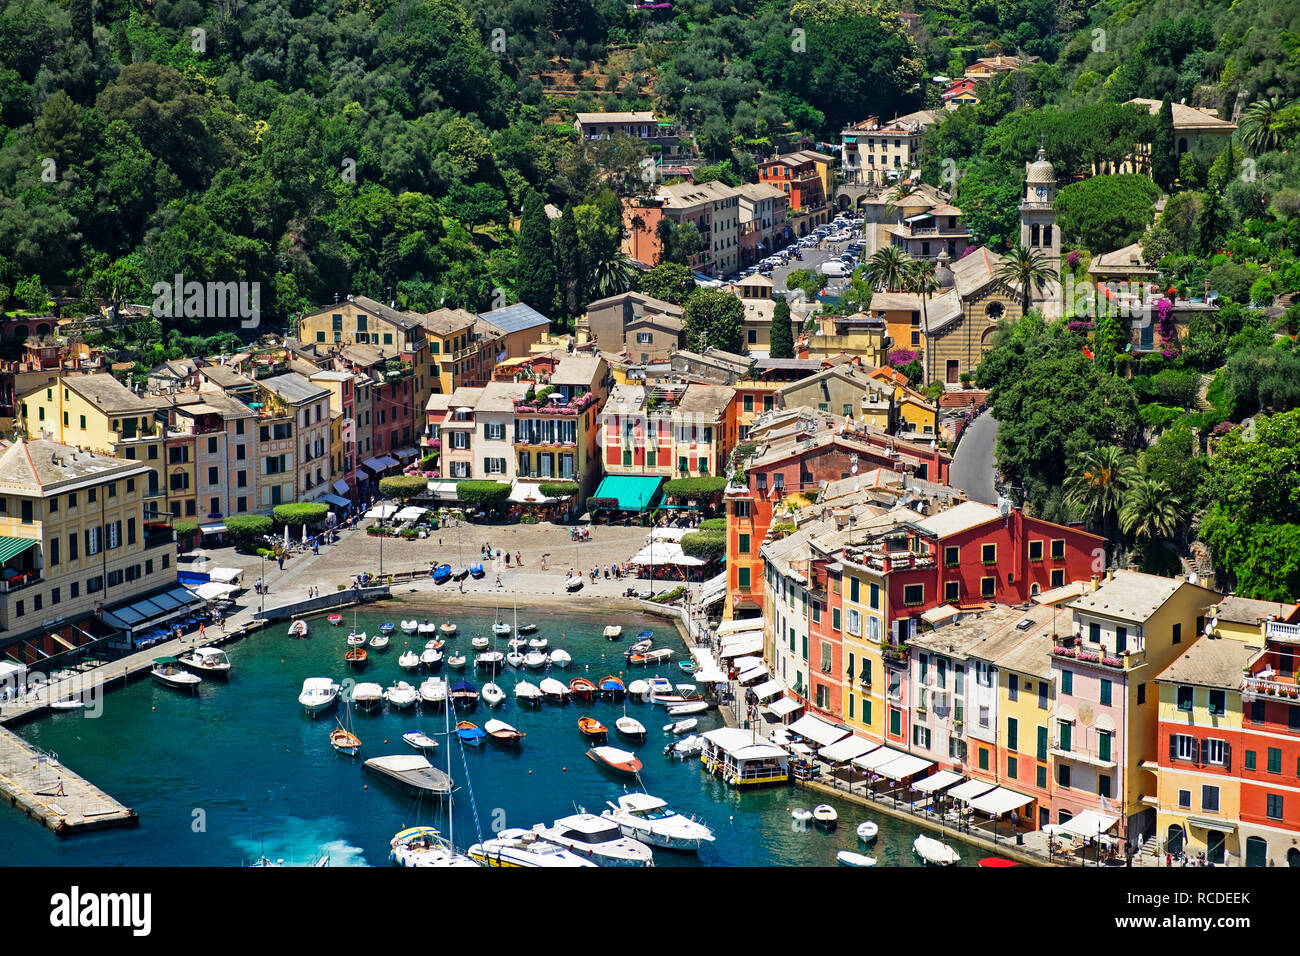 Port de plaisance port bateaux d'été, Portofino, Gênes, ligurie, italie Banque D'Images